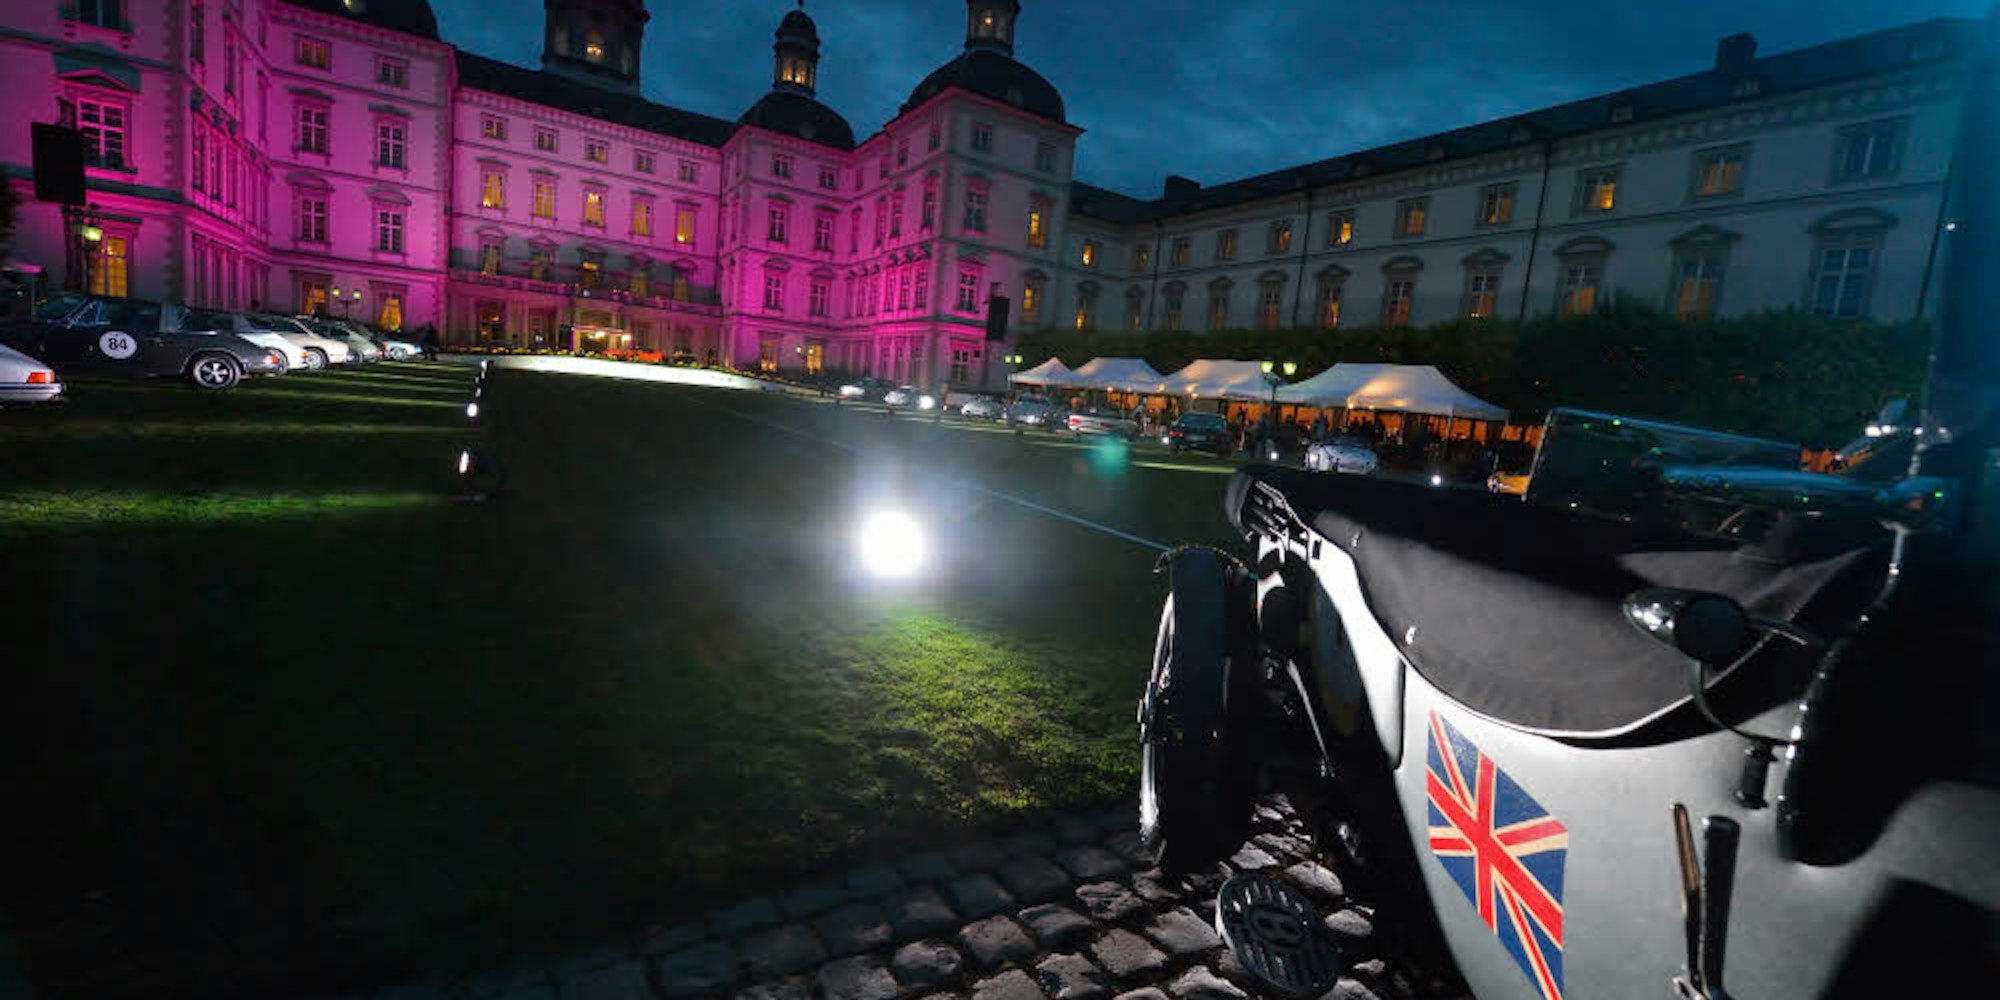 Am Abend vor der Rallye waren die Teilnehmer im stilvollen Ambiente von Schloss Bensberg zum Barbecue eingeladen.